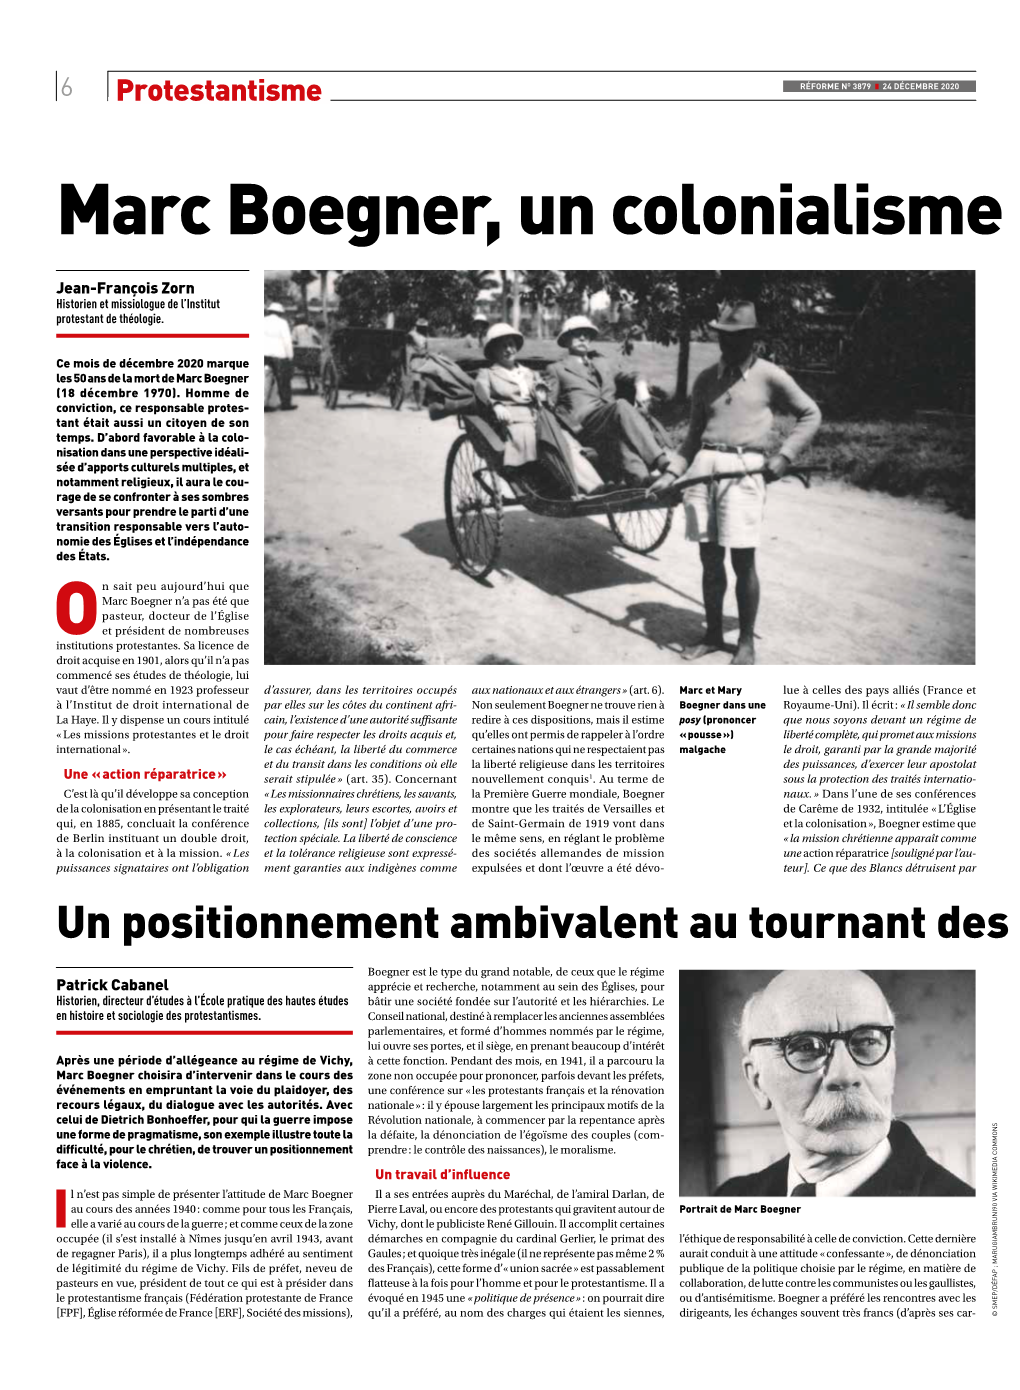 Marc Boegner, Un Colonialisme Contrarié